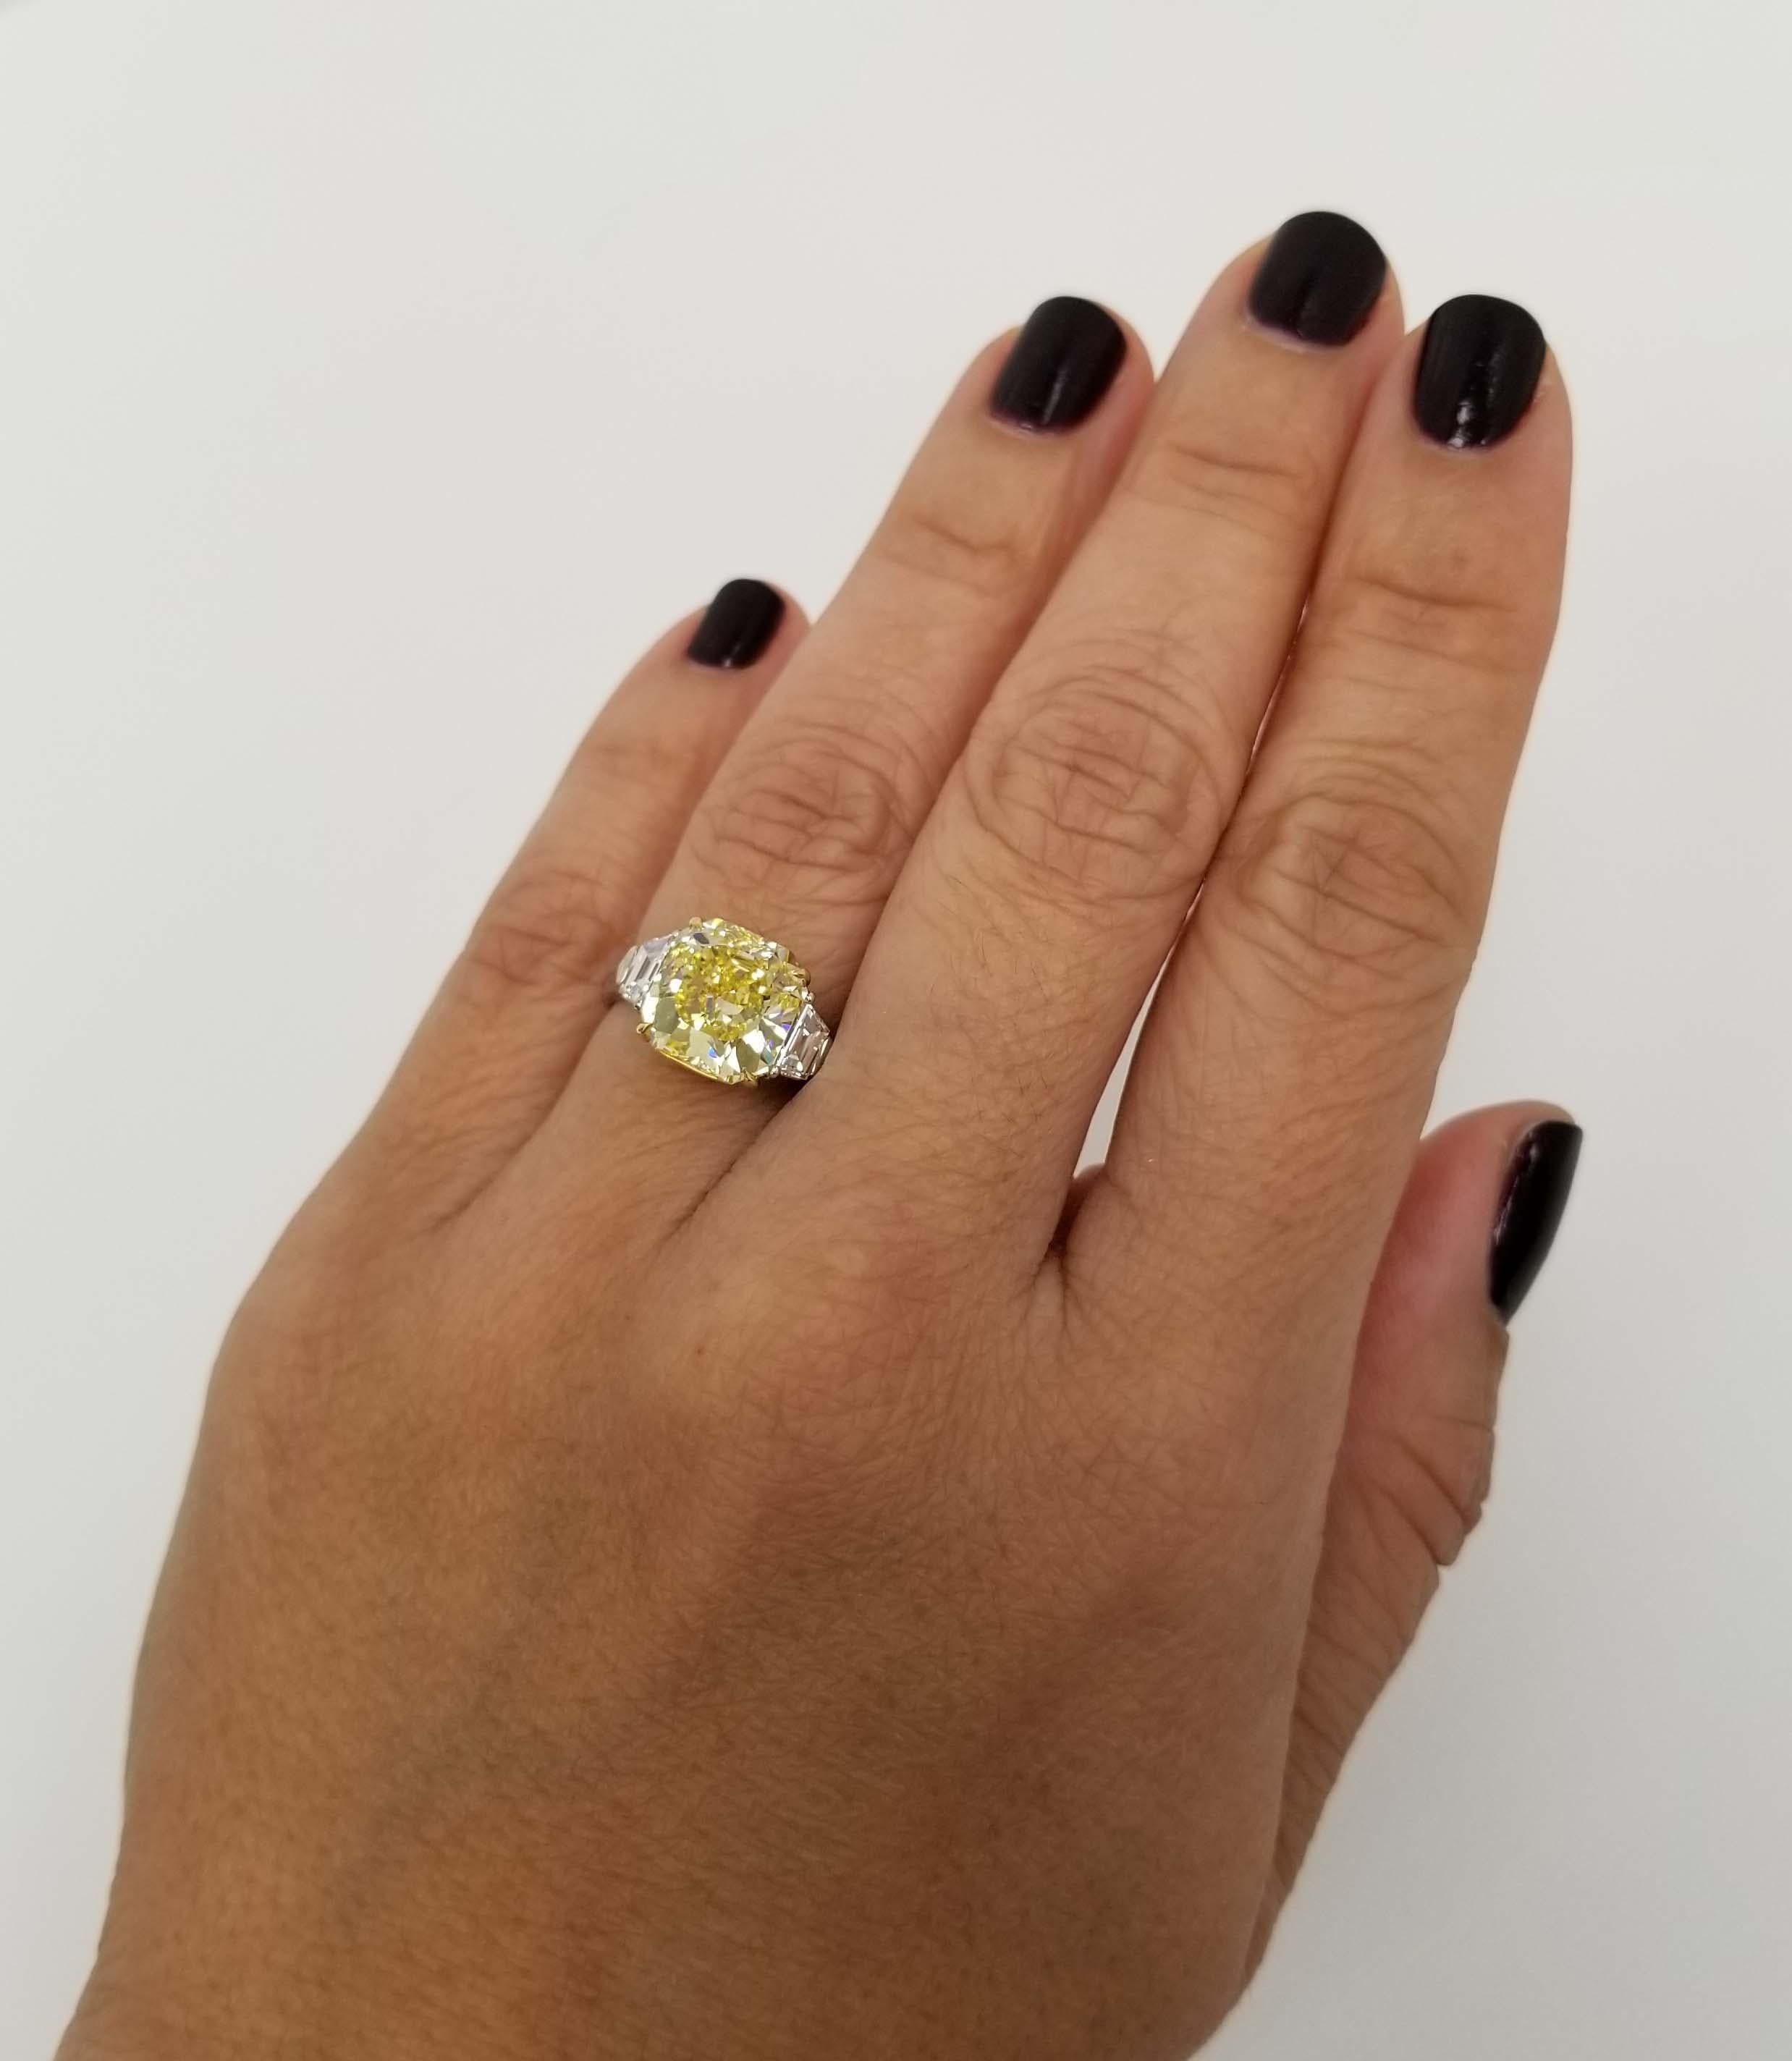 5 ct yellow diamond ring